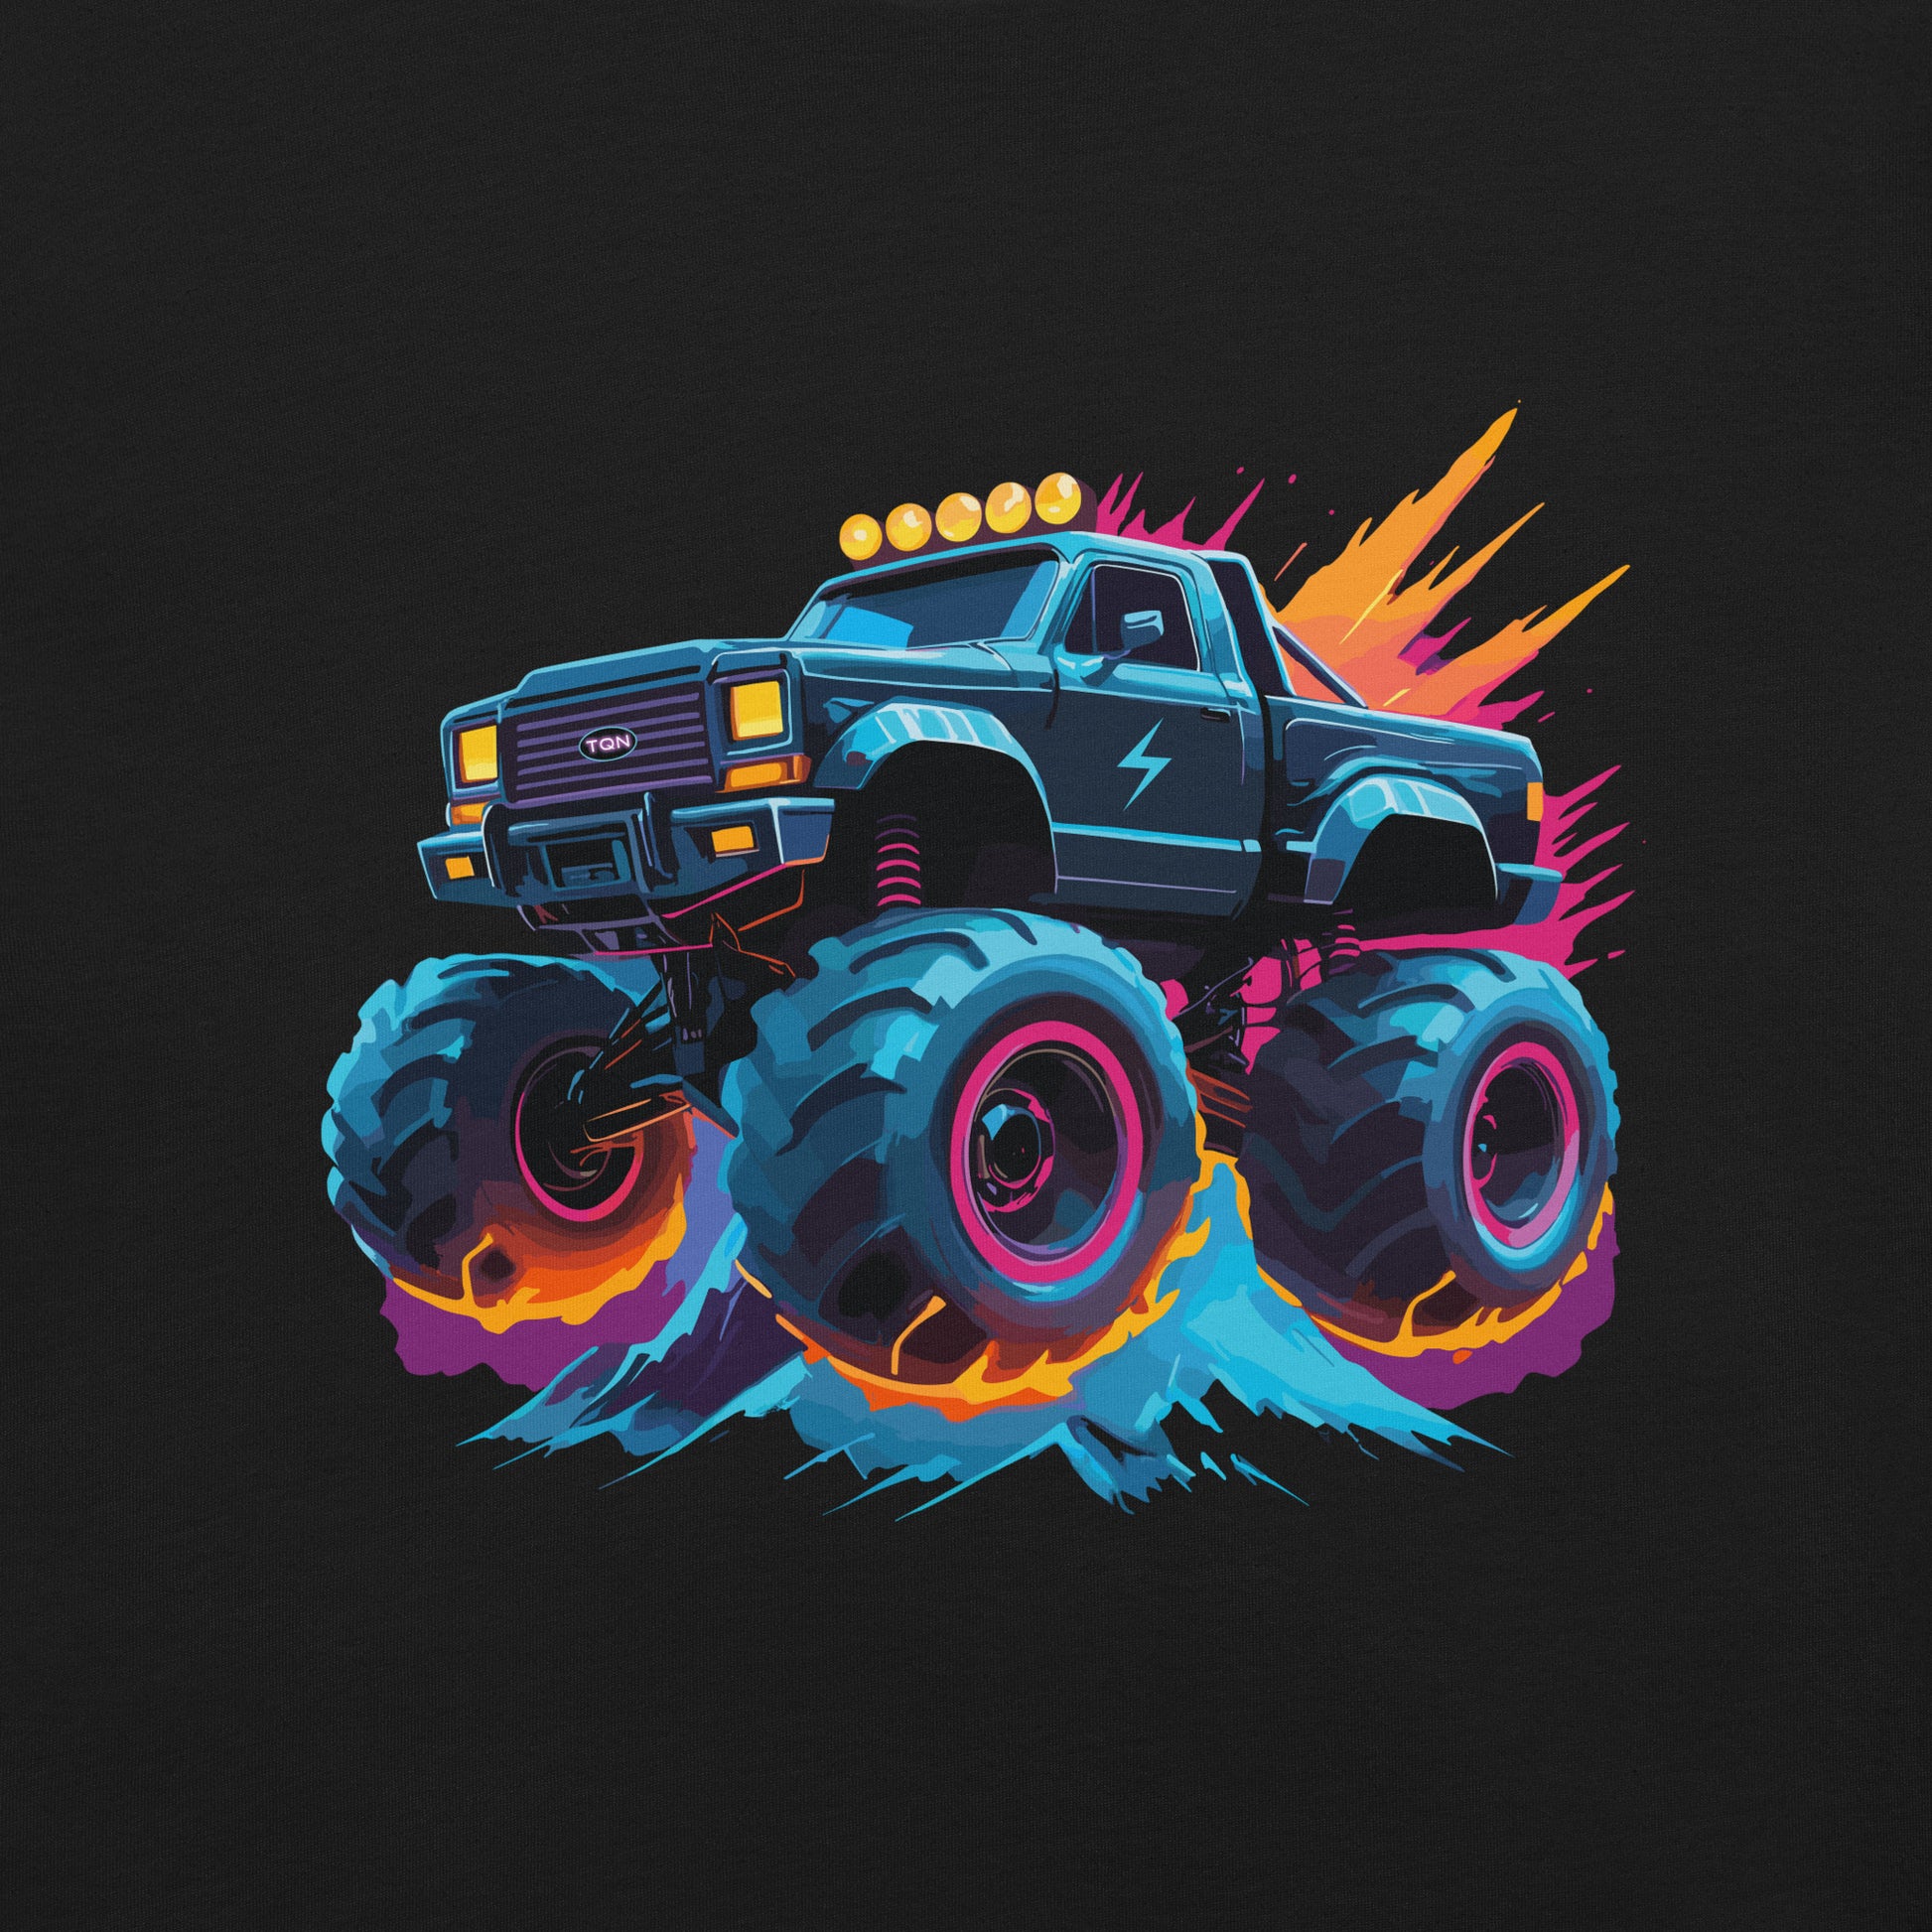 Neon Flying Monster Truck design